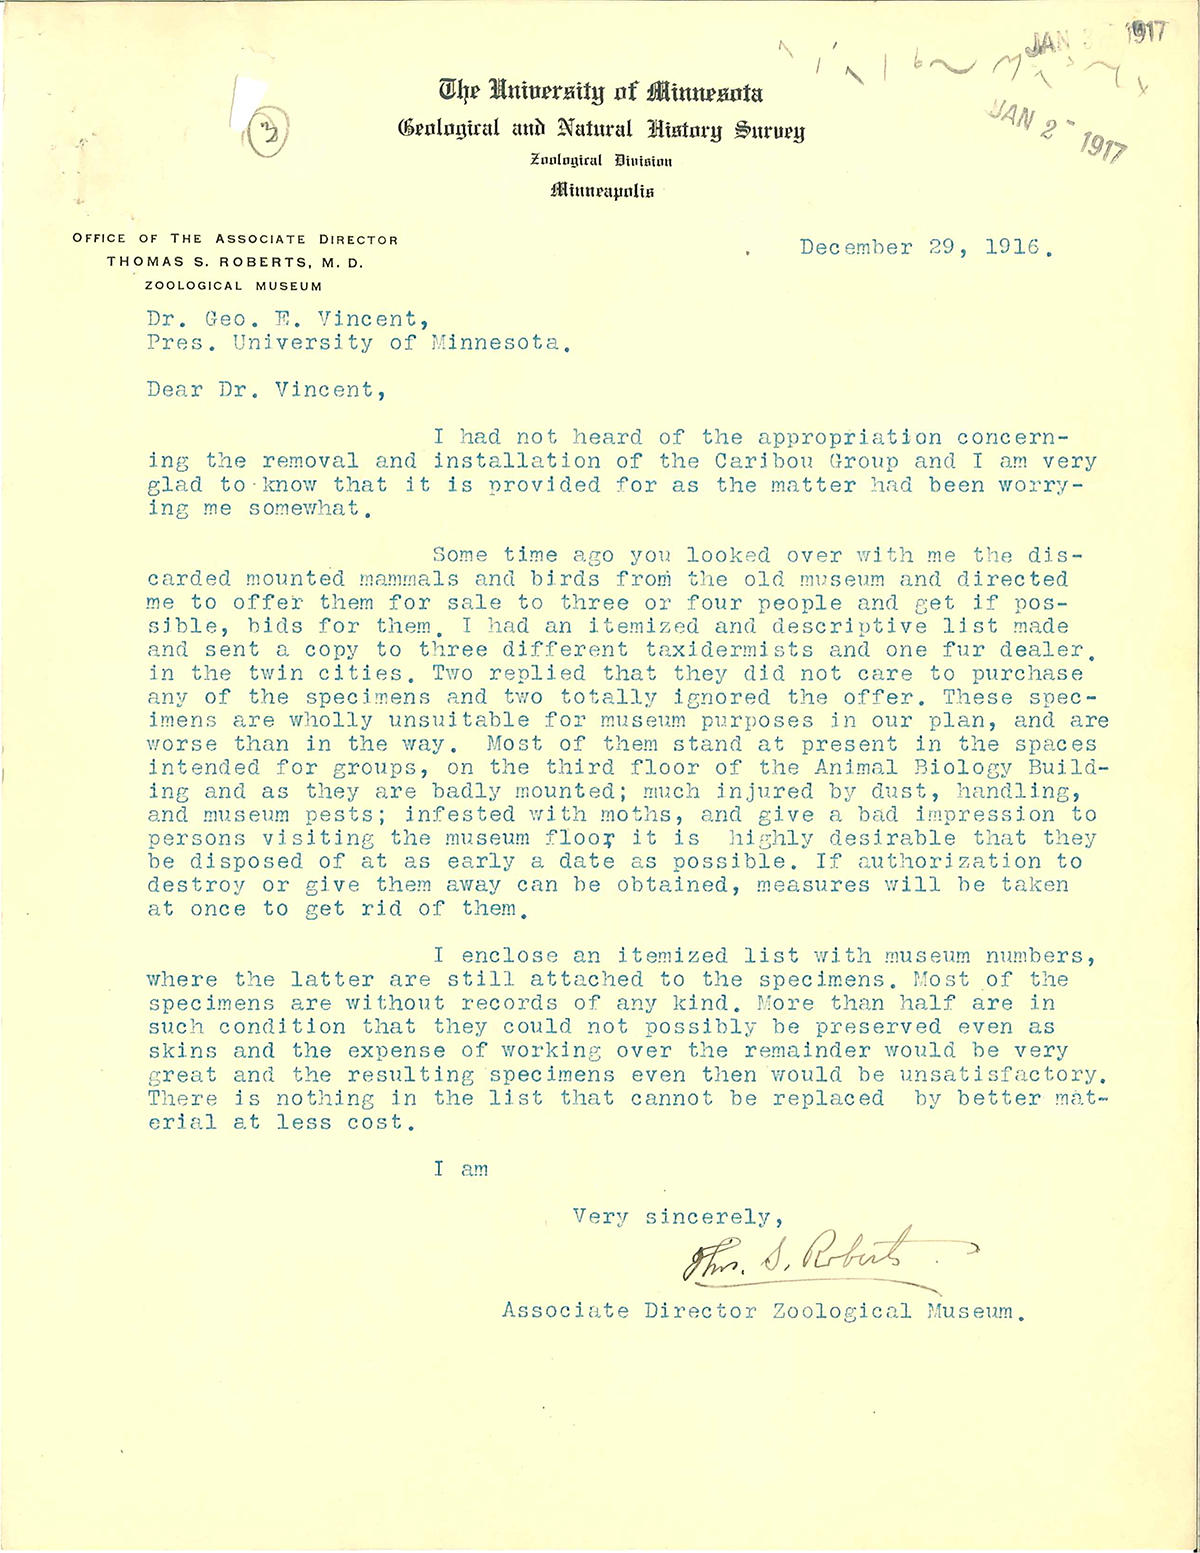 Roberts letter to President Vincent - December 29, 1916